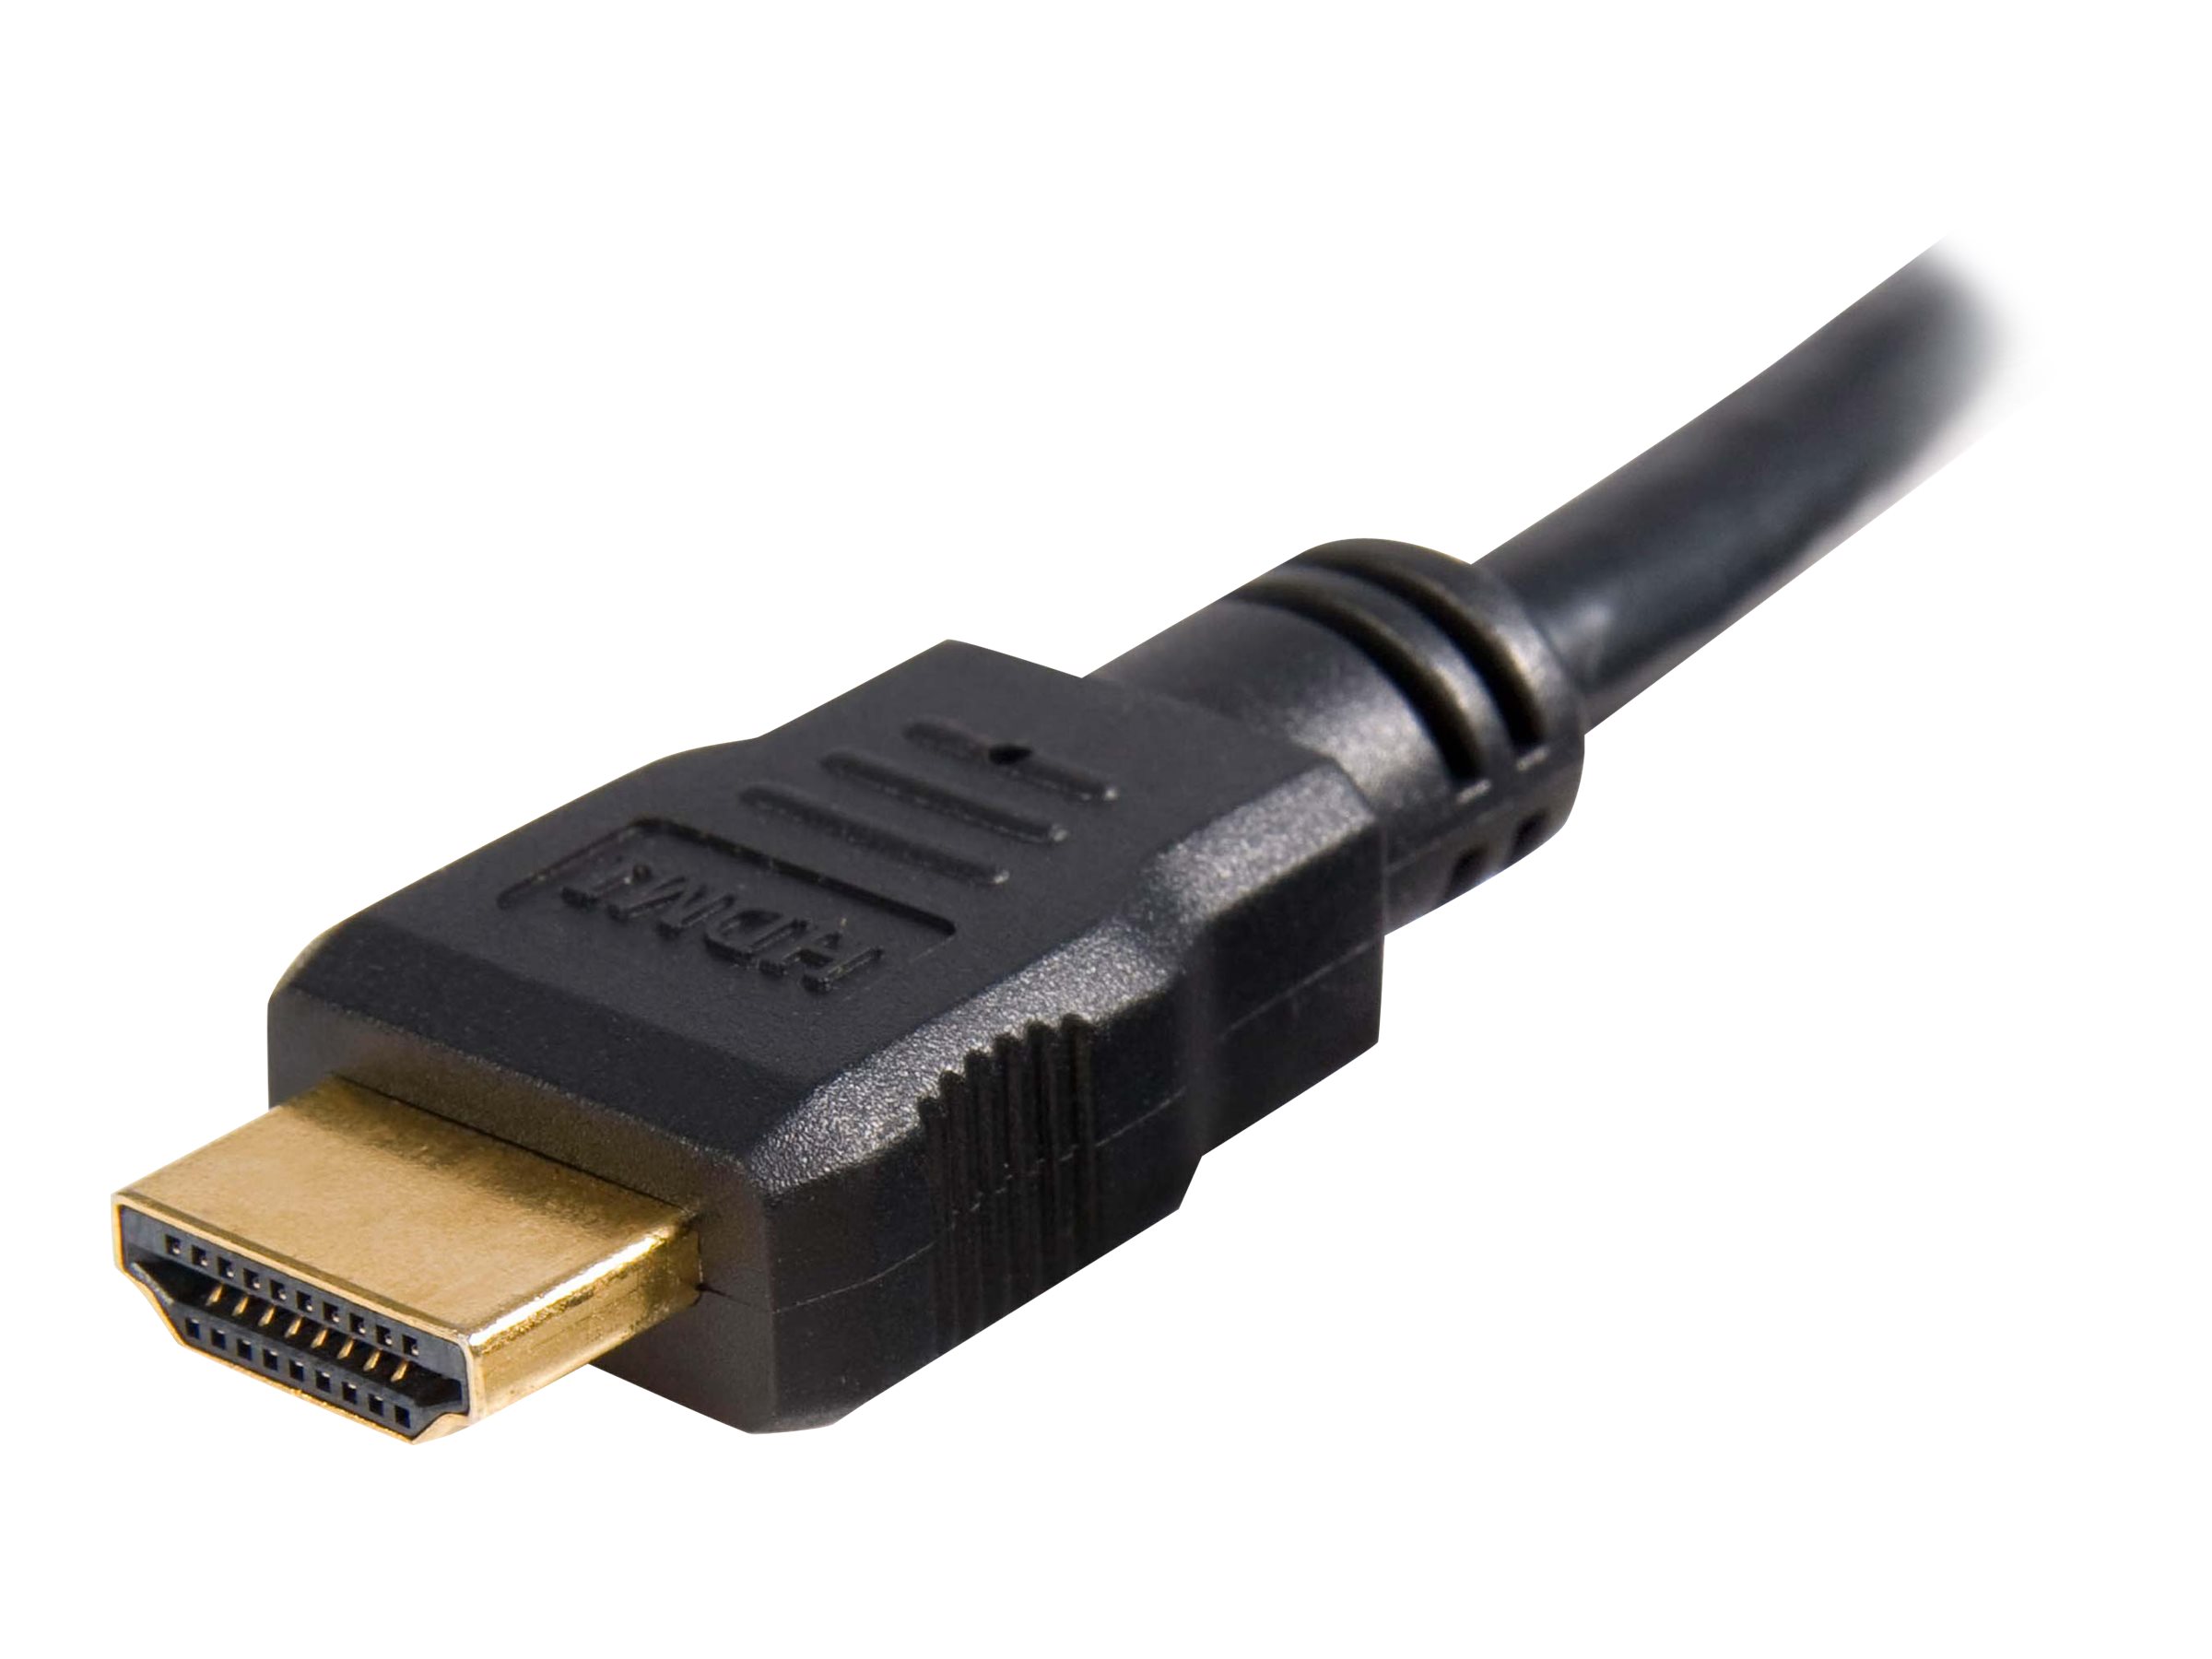 StarTech.com High-Speed-HDMI-Kabel 5m - HDMI Verbindungskabel Ultra HD 4k x 2k mit vergoldeten Kontakten - HDMI Anschlusskabel (St/St) - HDMI-Kabel - 5 m